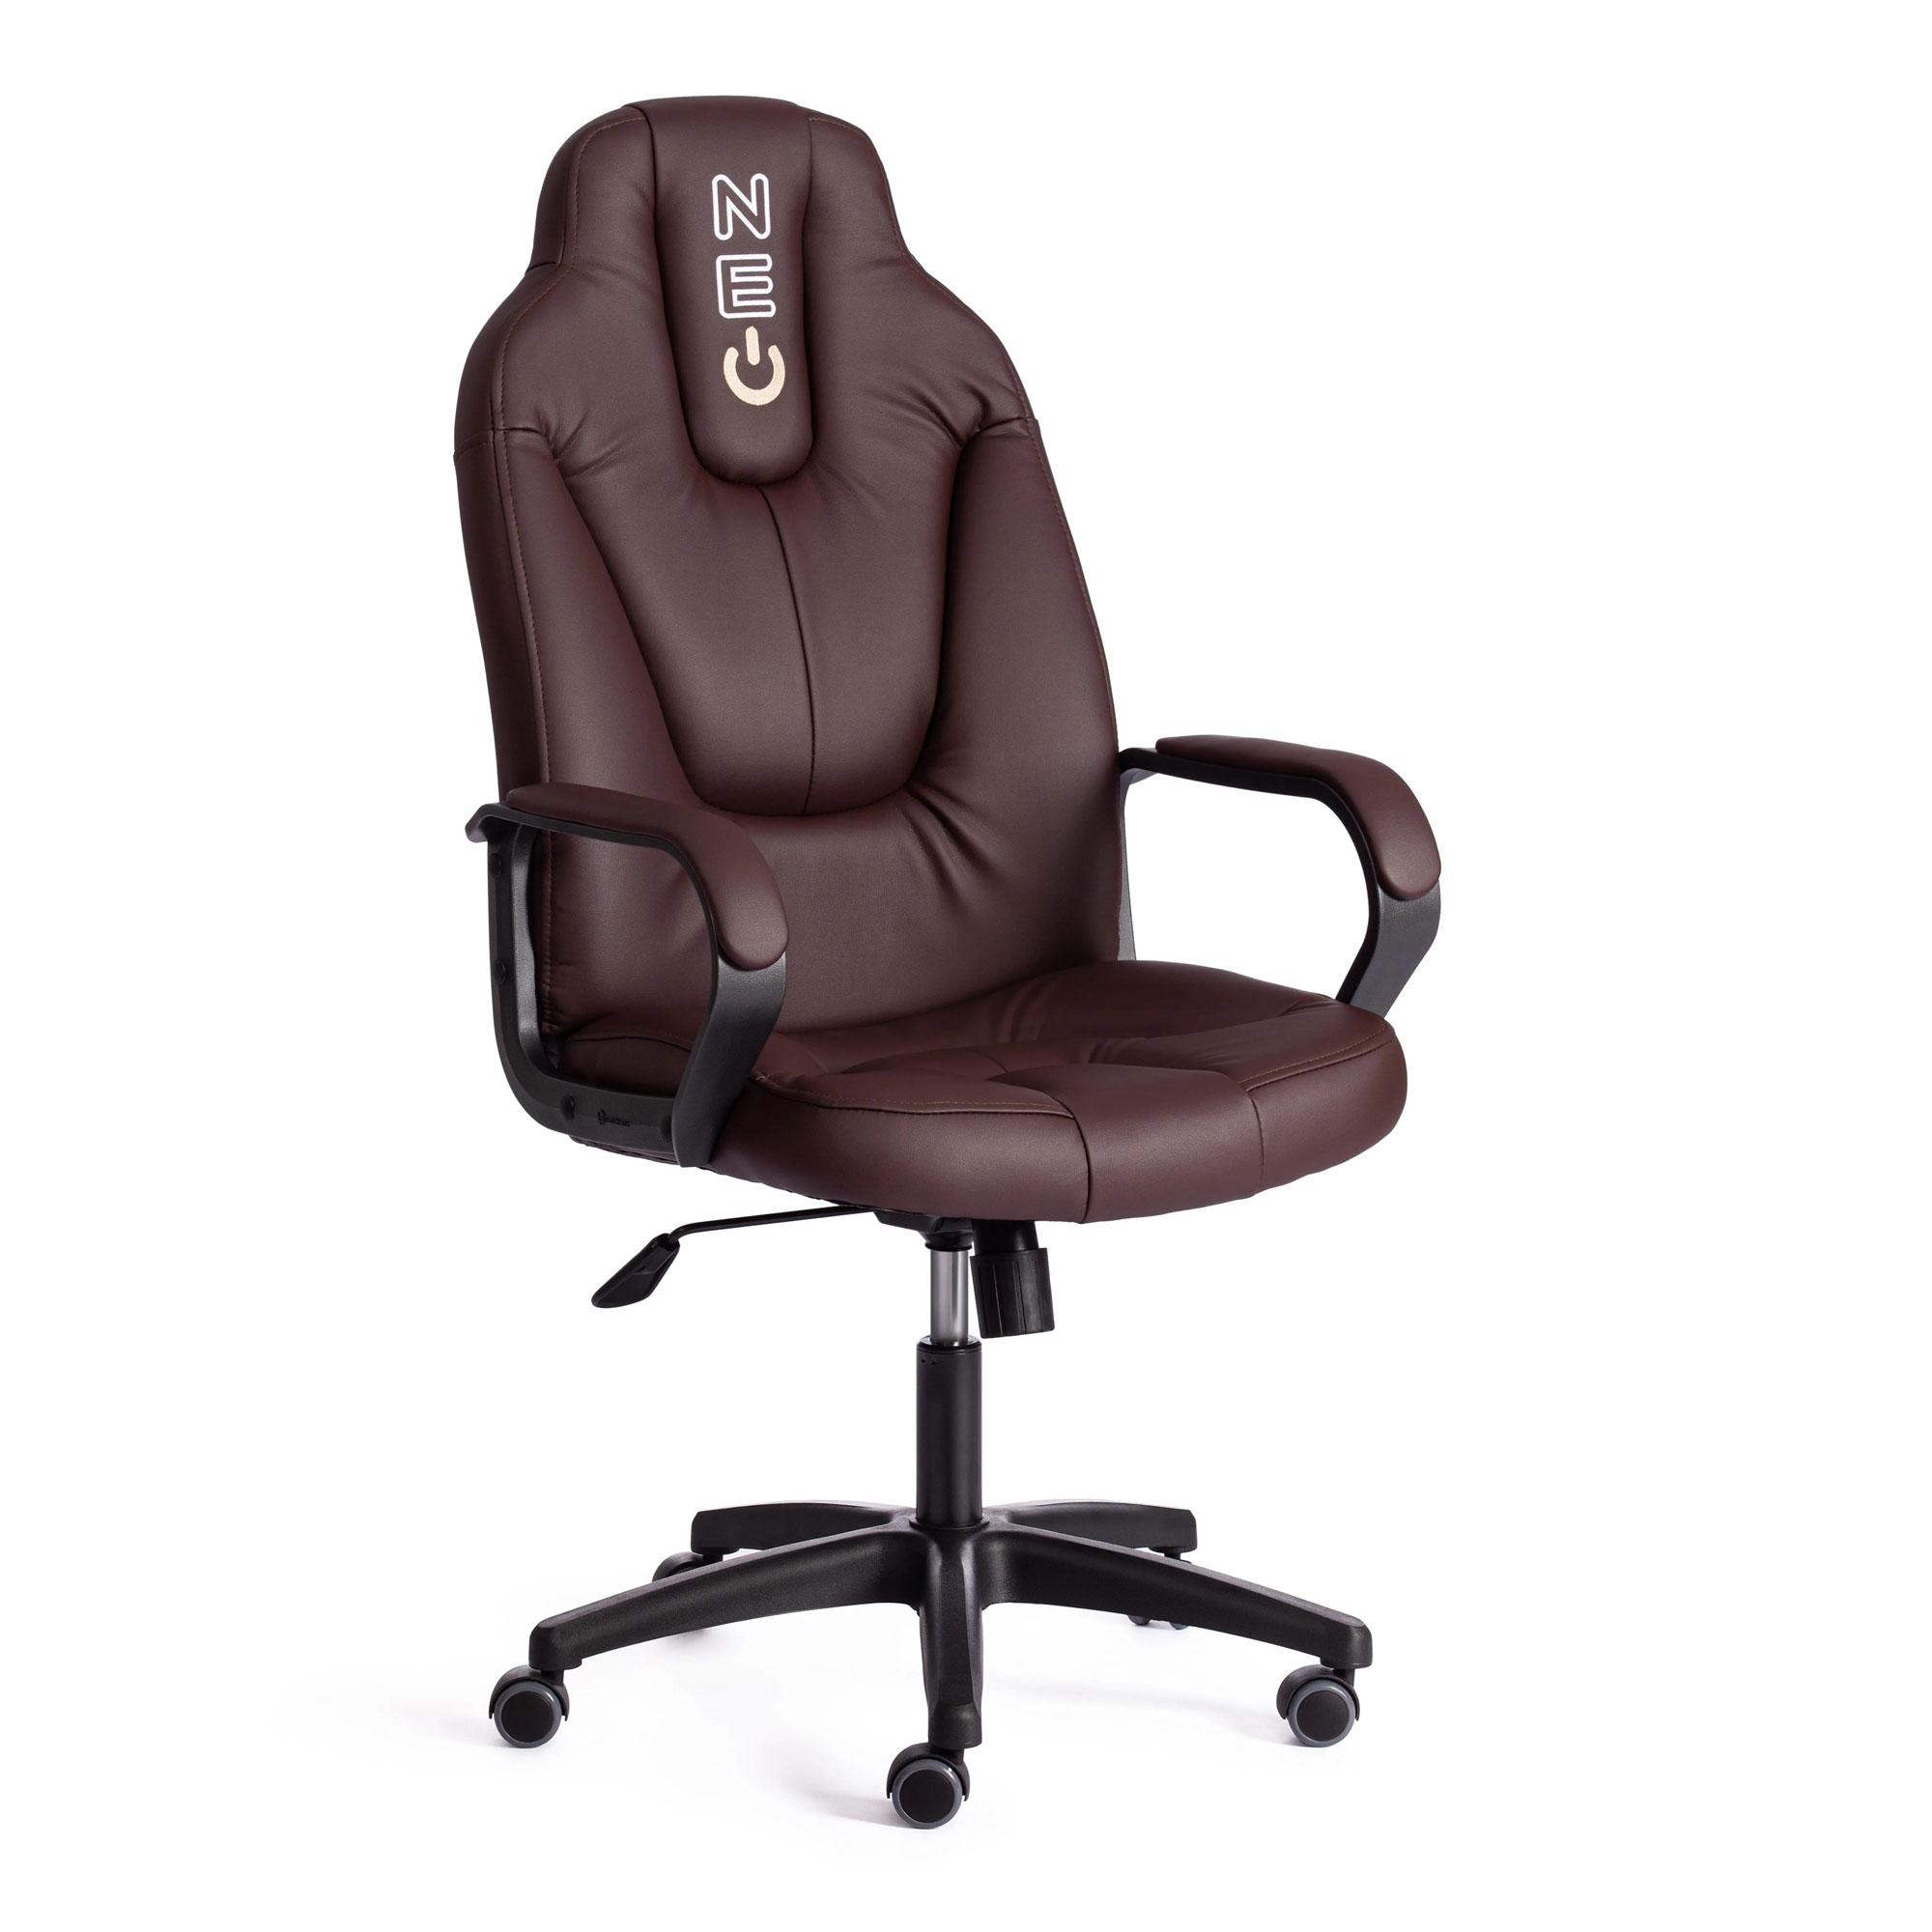 Кресло компьютерное TC Neo искусственная кожа коричневое 64х49х122 см кресло компьютерное tc neo искусственная кожа чёрное с красным 64х49х122 см